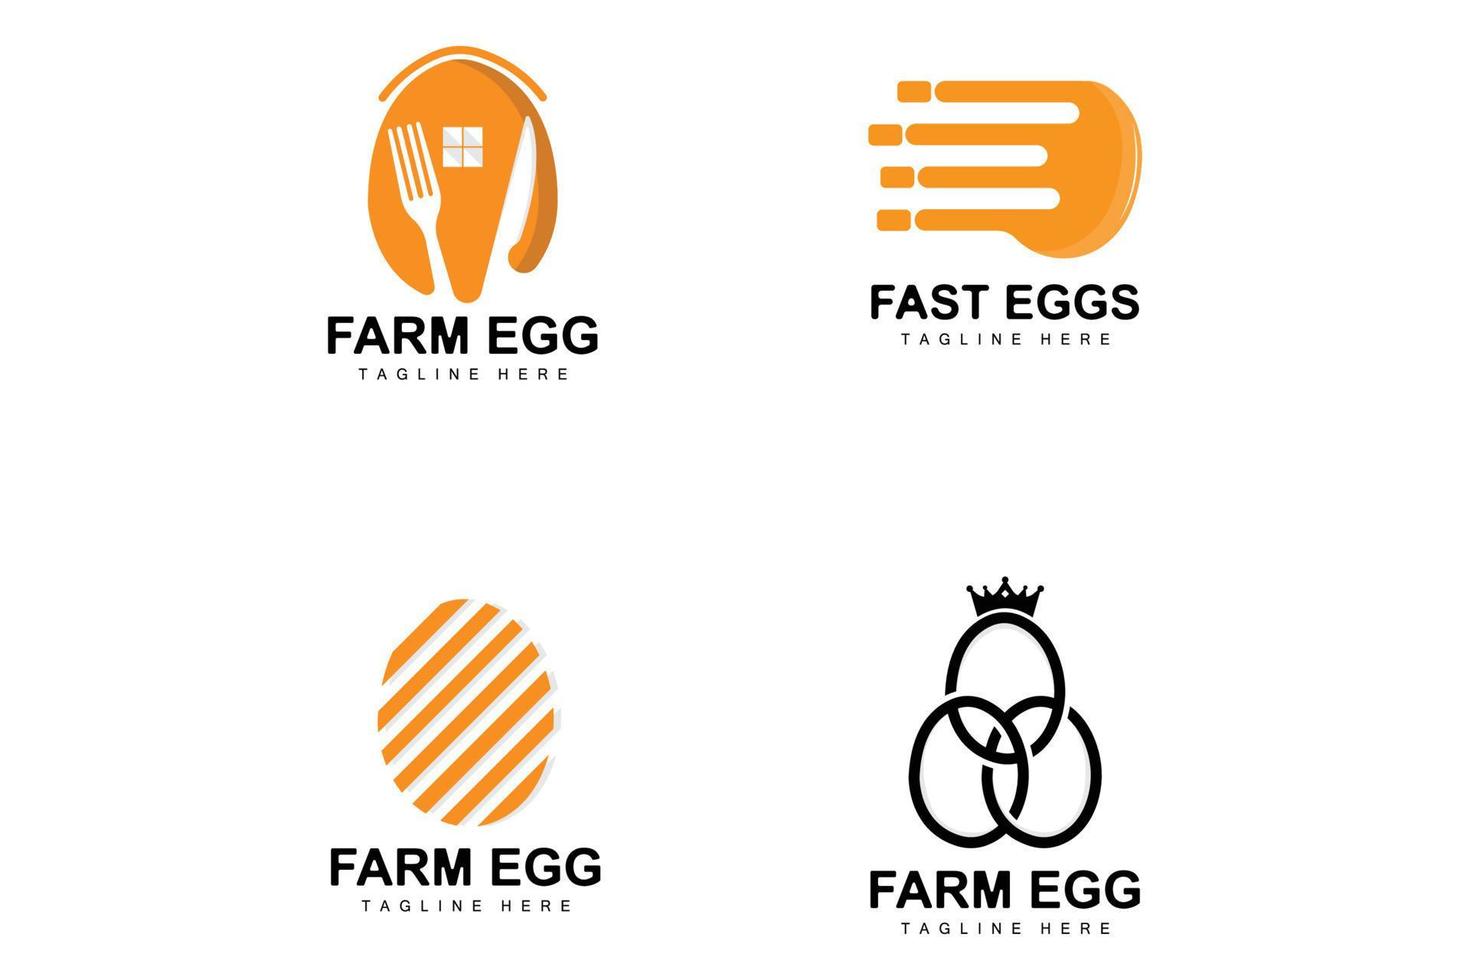 logotipo de ovo, design de fazenda de ovos, logotipo de frango, vetor de comida asiática